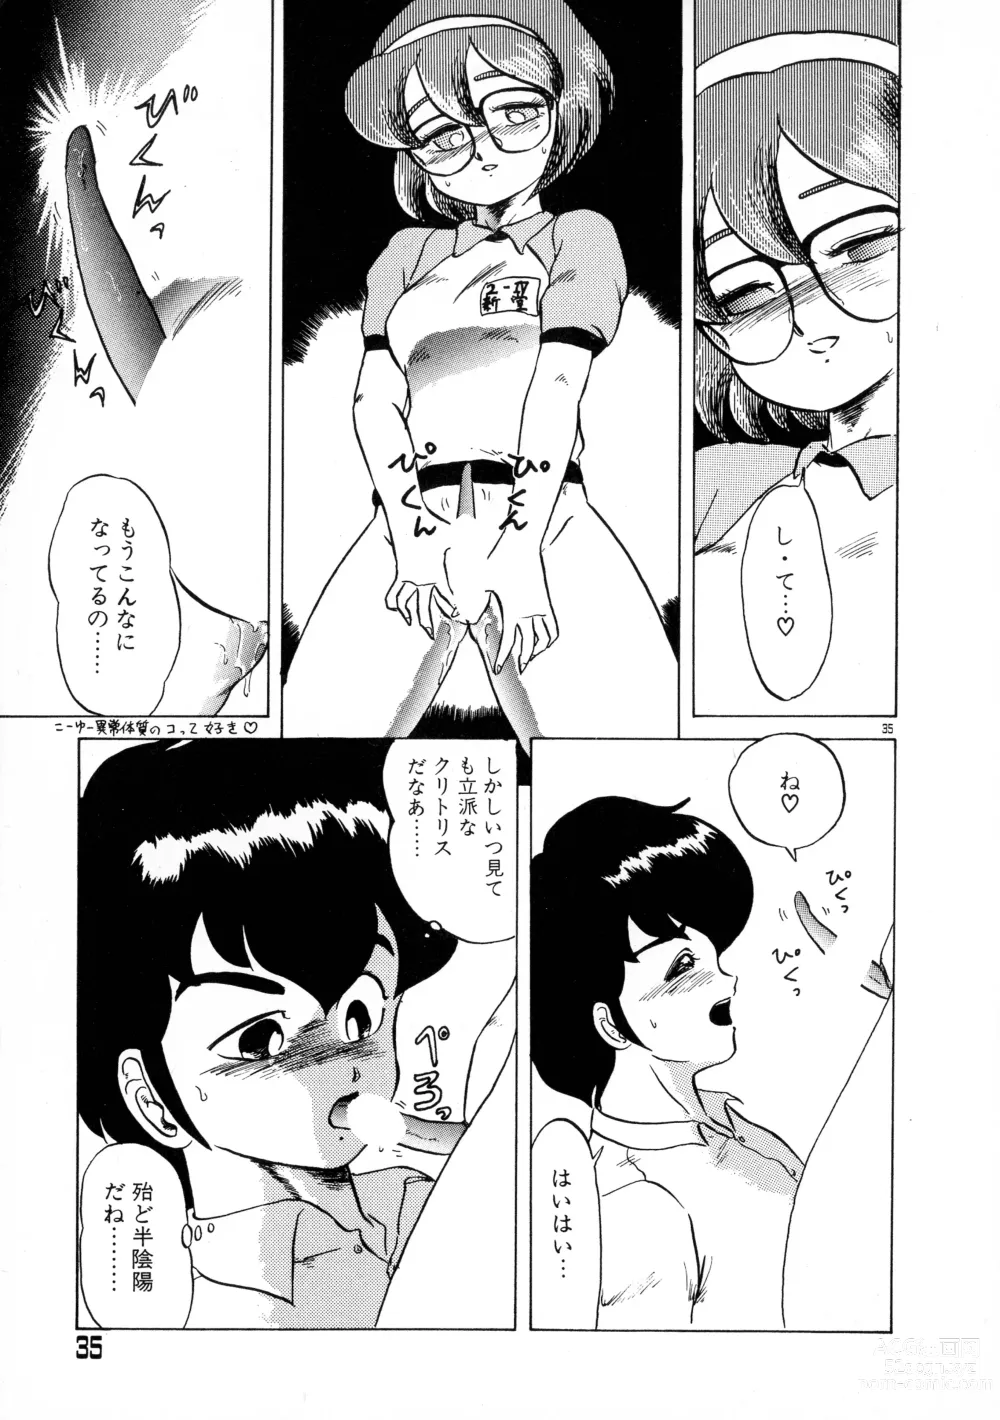 Page 35 of manga Akai Miwaku